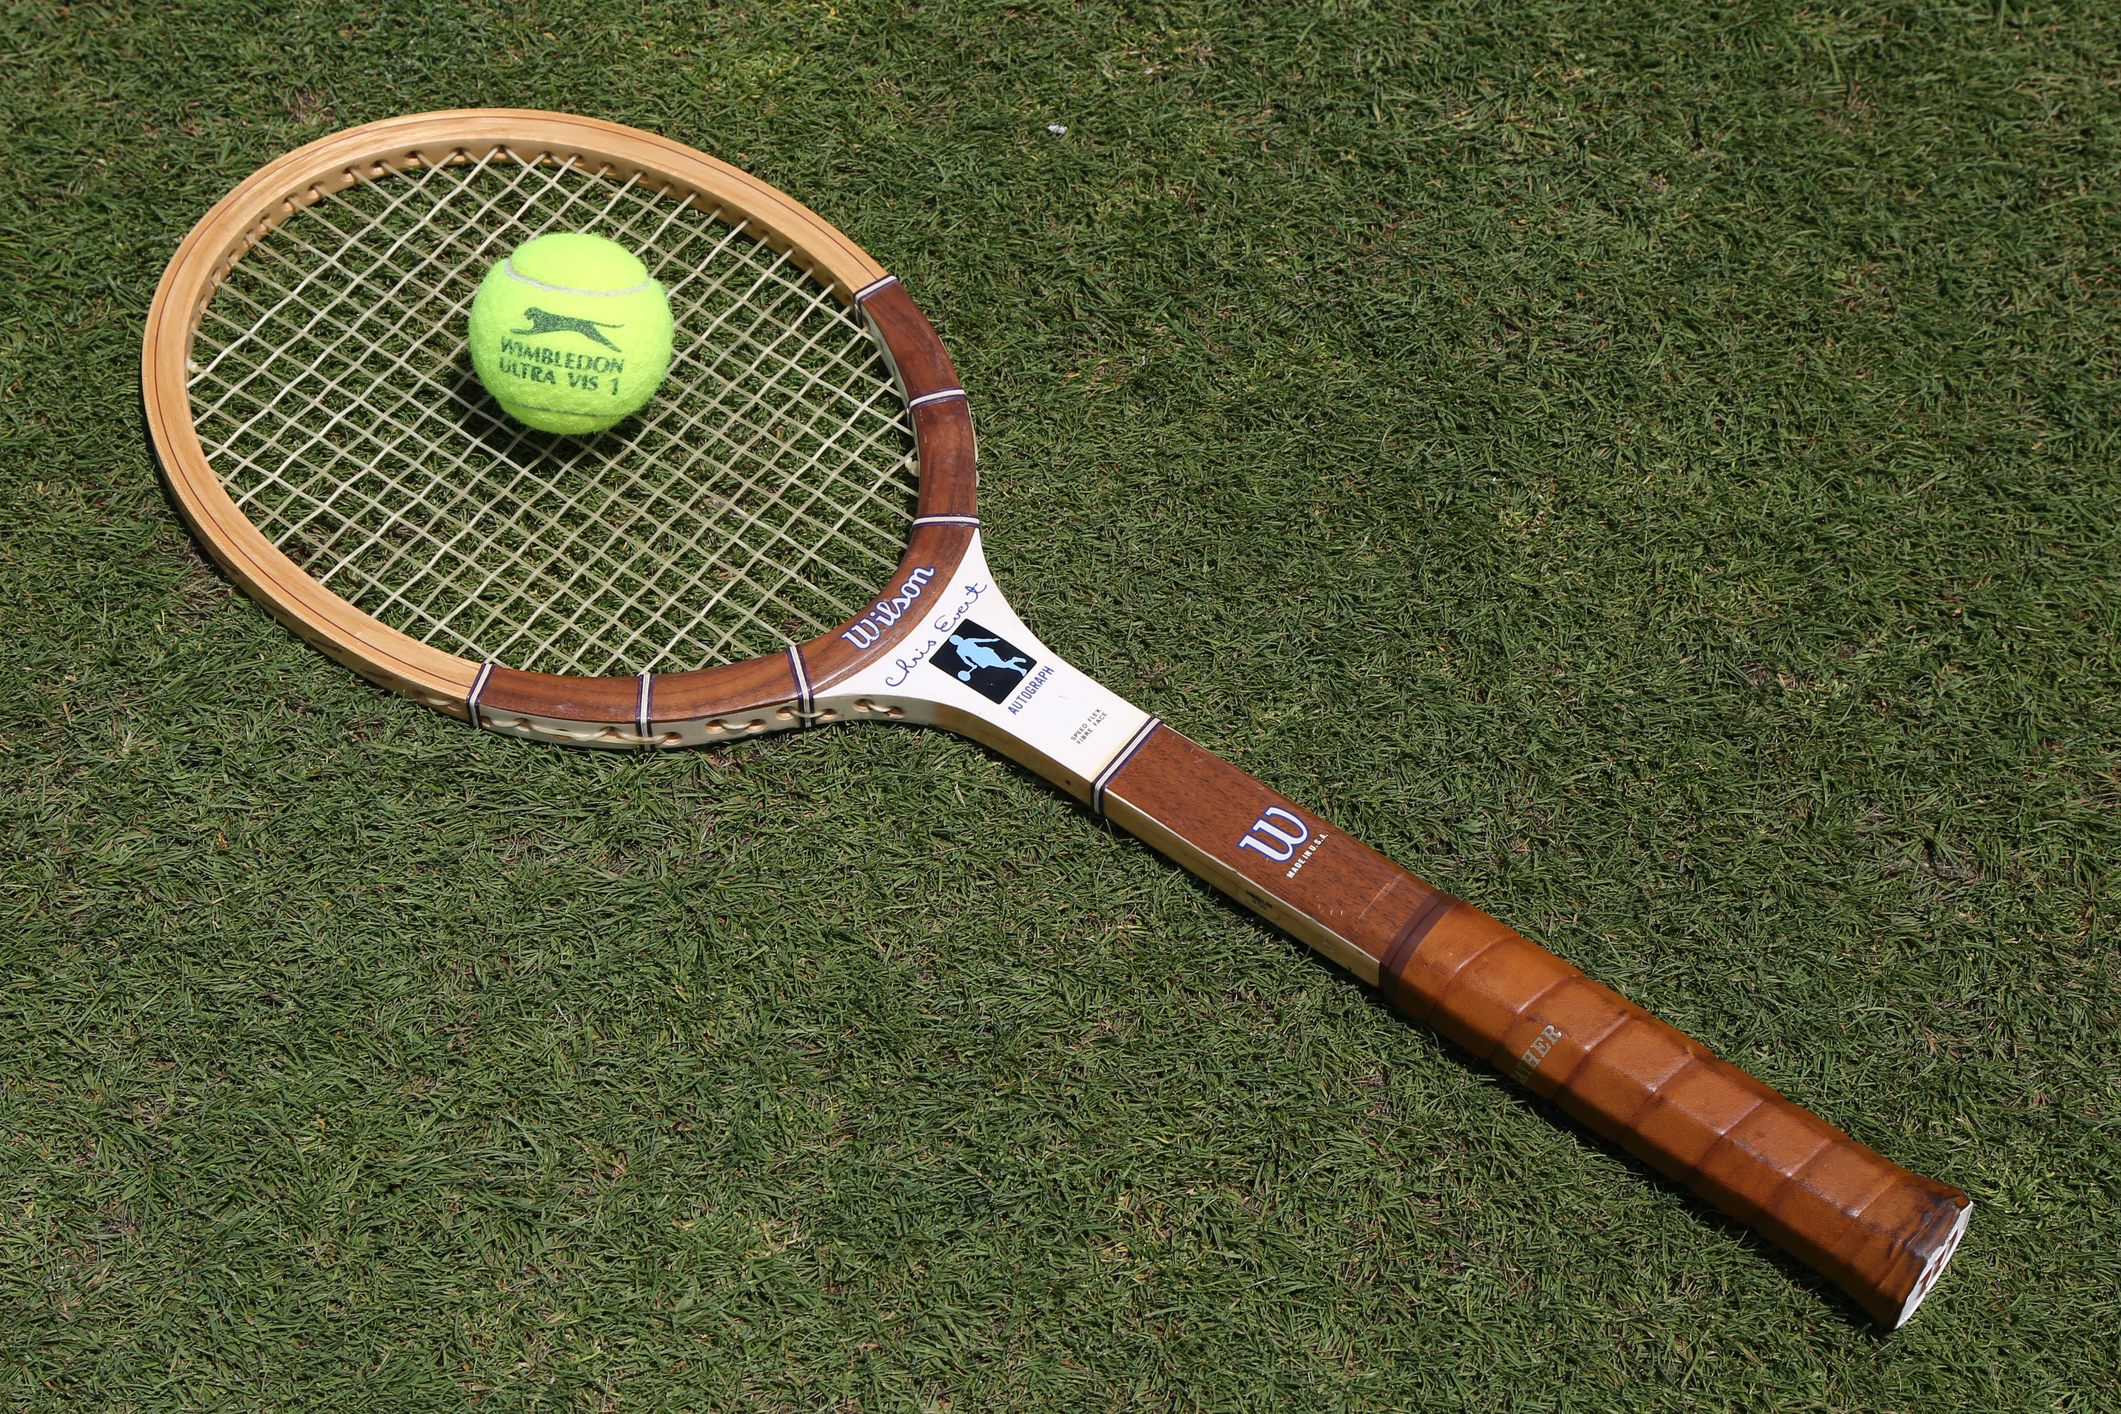 An old tennis racket.